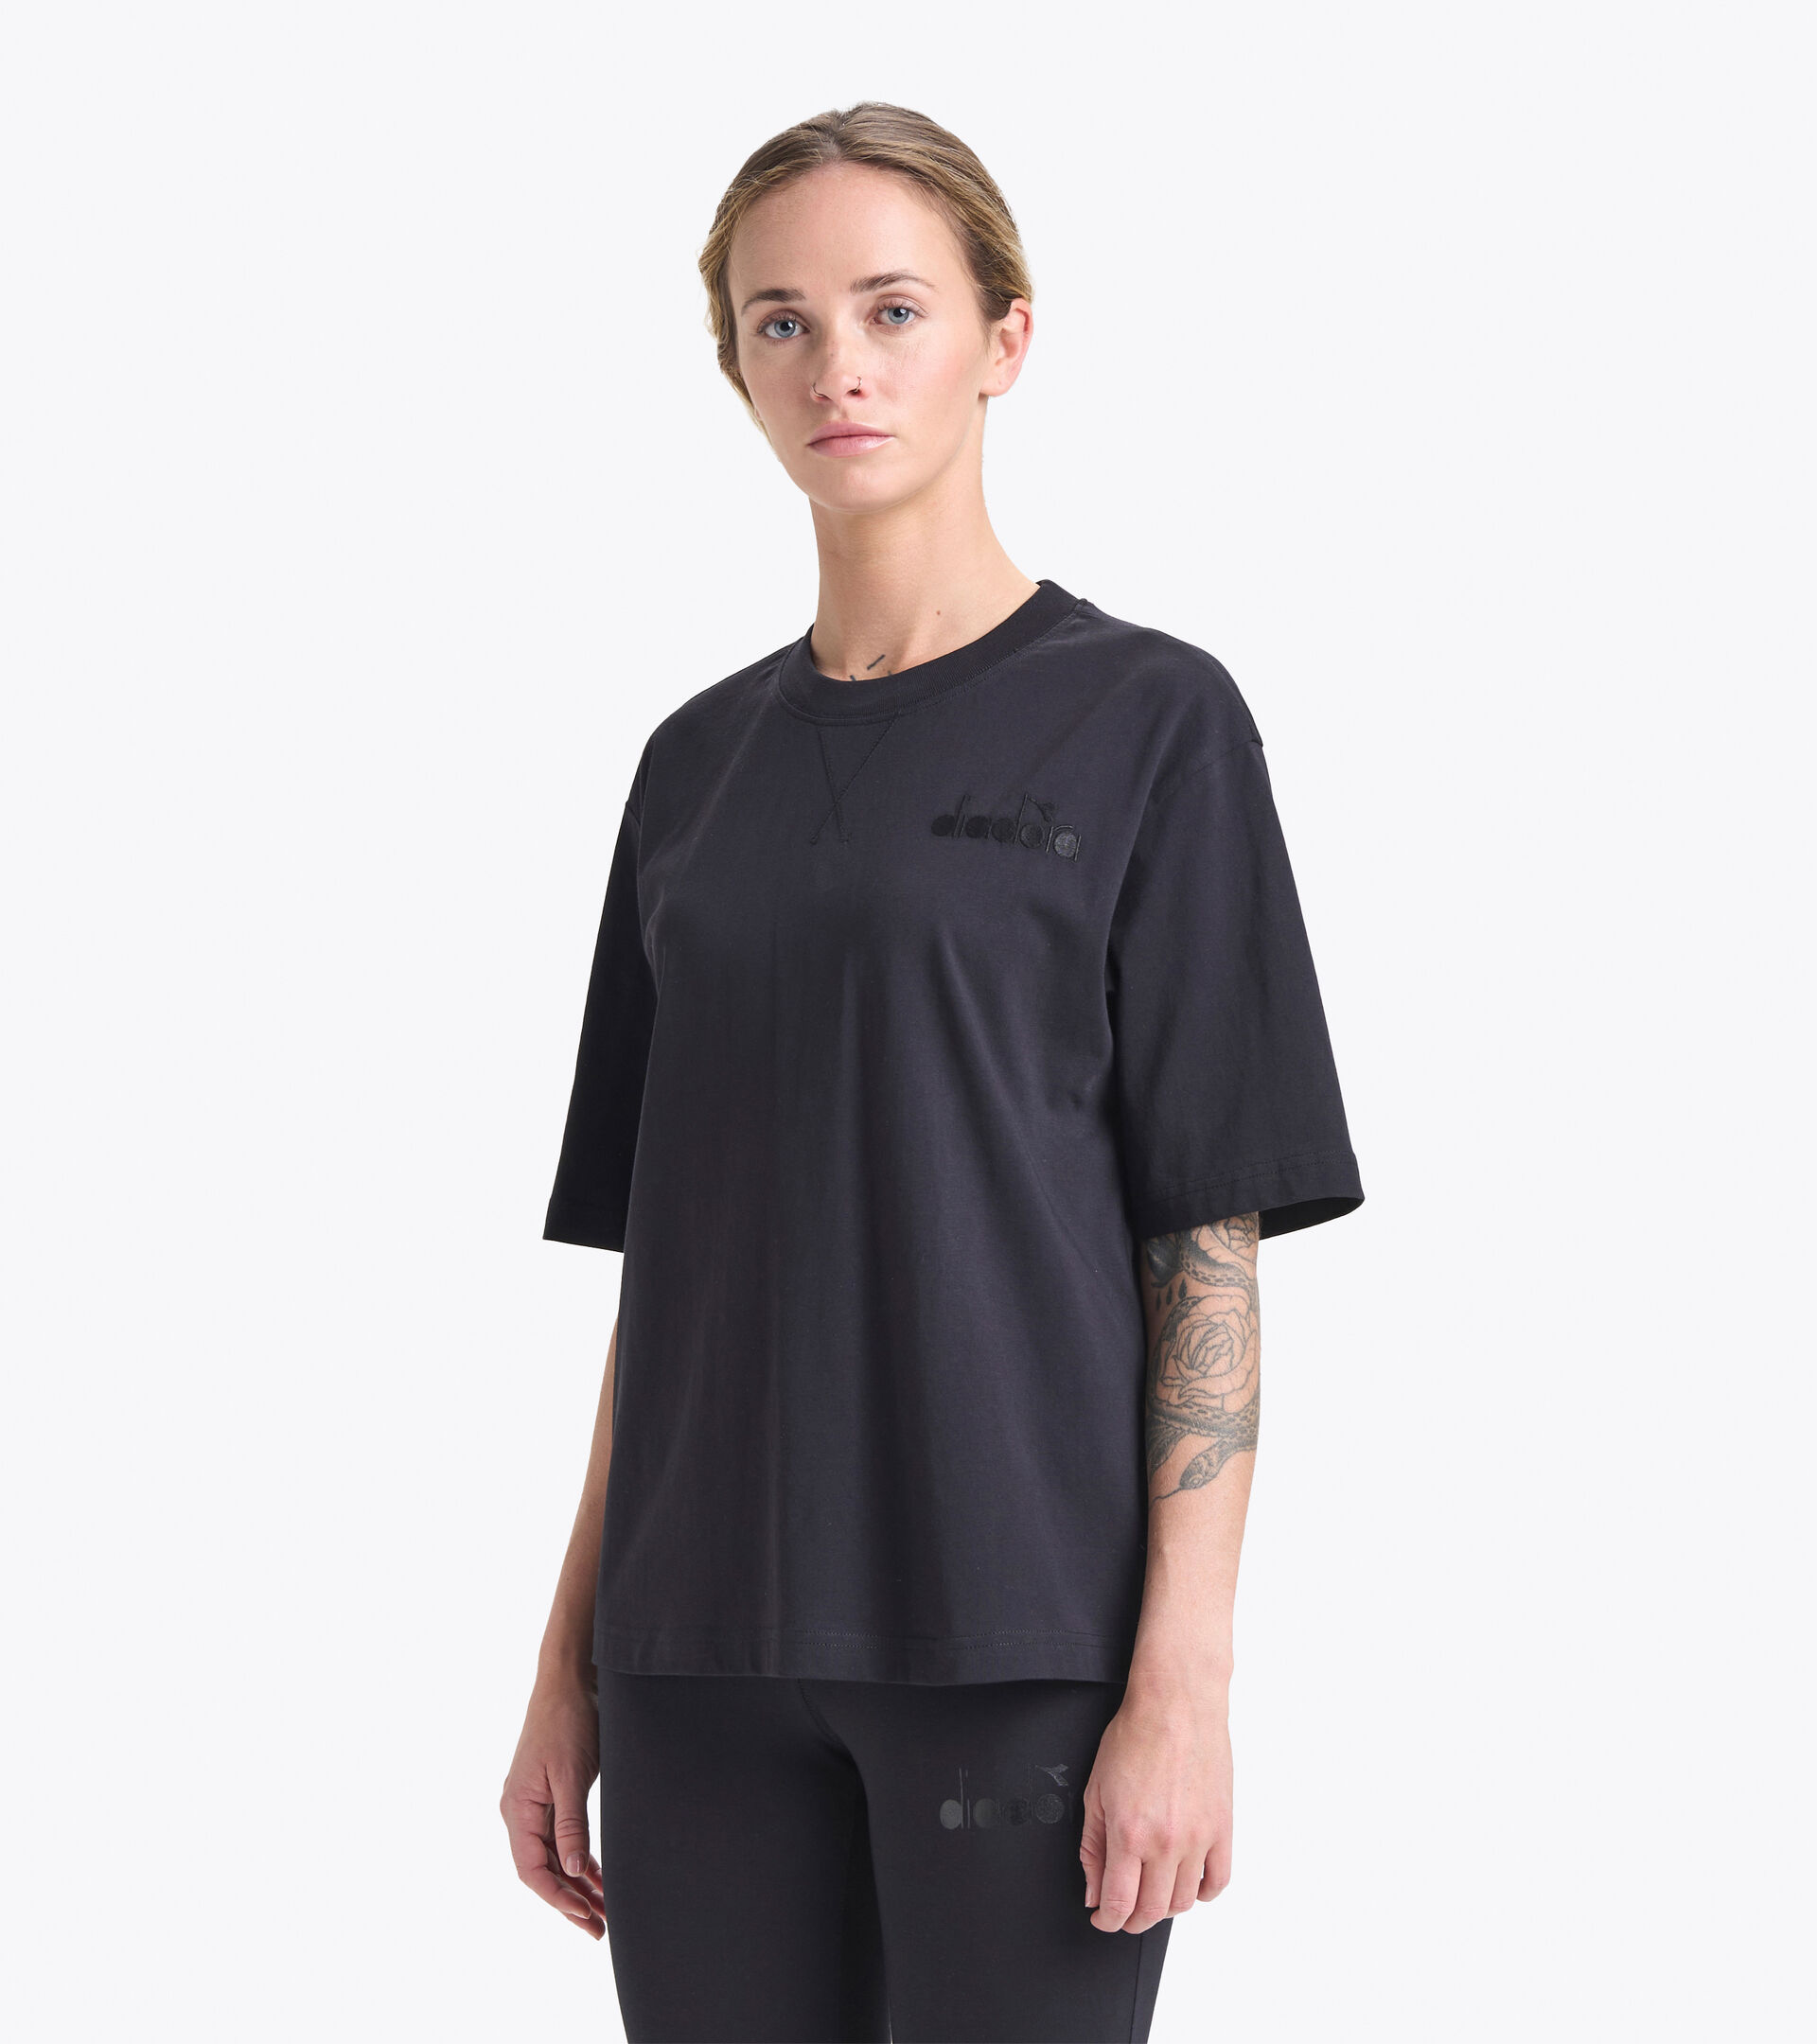 Camiseta de algodón - Mujer L. T-SHIRT SS SPW LOGO NEGRO - Diadora